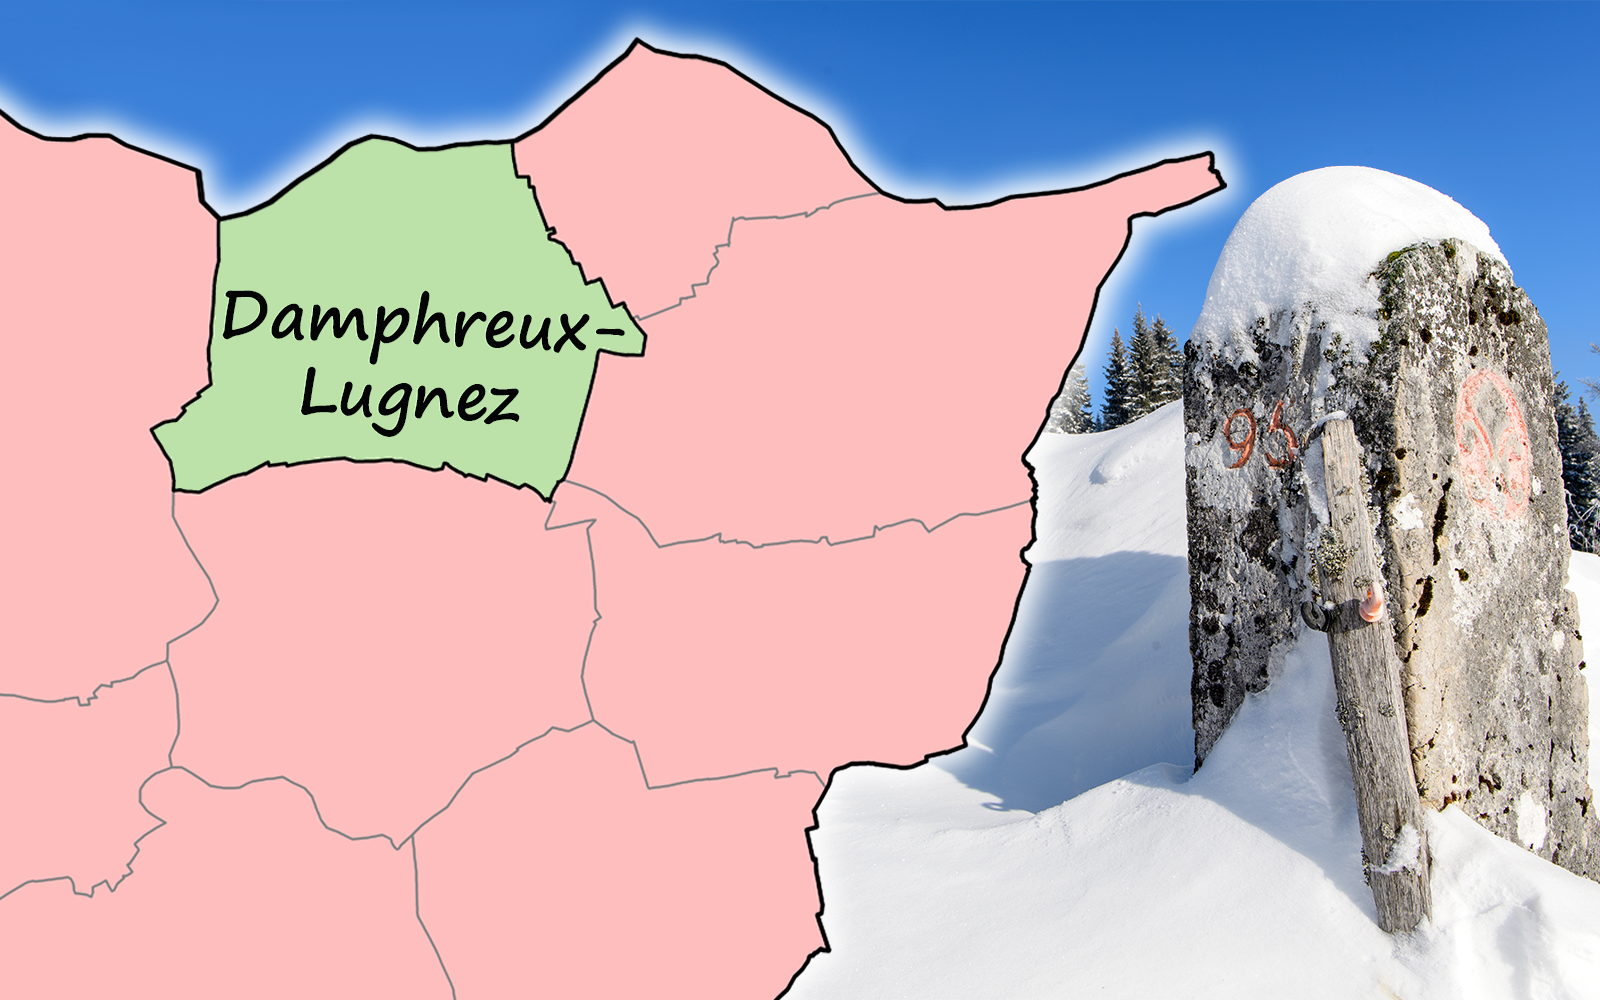 L'immagine mostra un cippo di confine in un paesaggio innevato sulla destra. A sinistra, i confini comunali nella parte settentrionale del Canton Giura, nella regione francese di confine, con il nome del comune "Damphreux-Lugnez". 